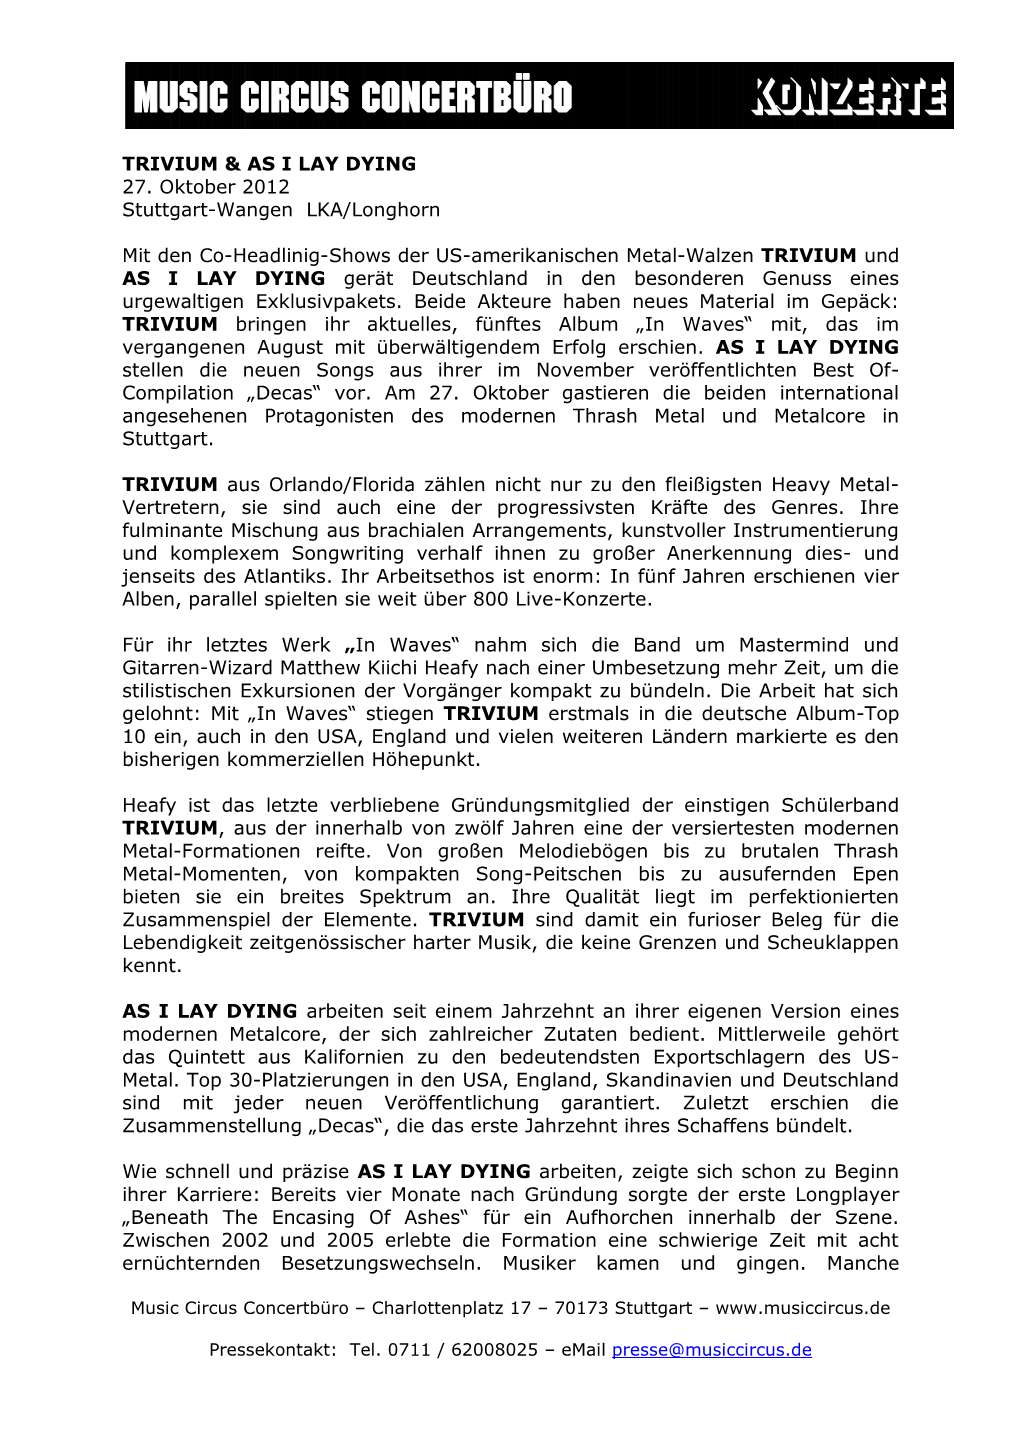 TRIVIUM & AS I LAY DYING 27. Oktober 2012 Stuttgart-Wangen LKA/Longhorn Mit Den Co-Headlinig-Shows Der US-Amerikanischen M